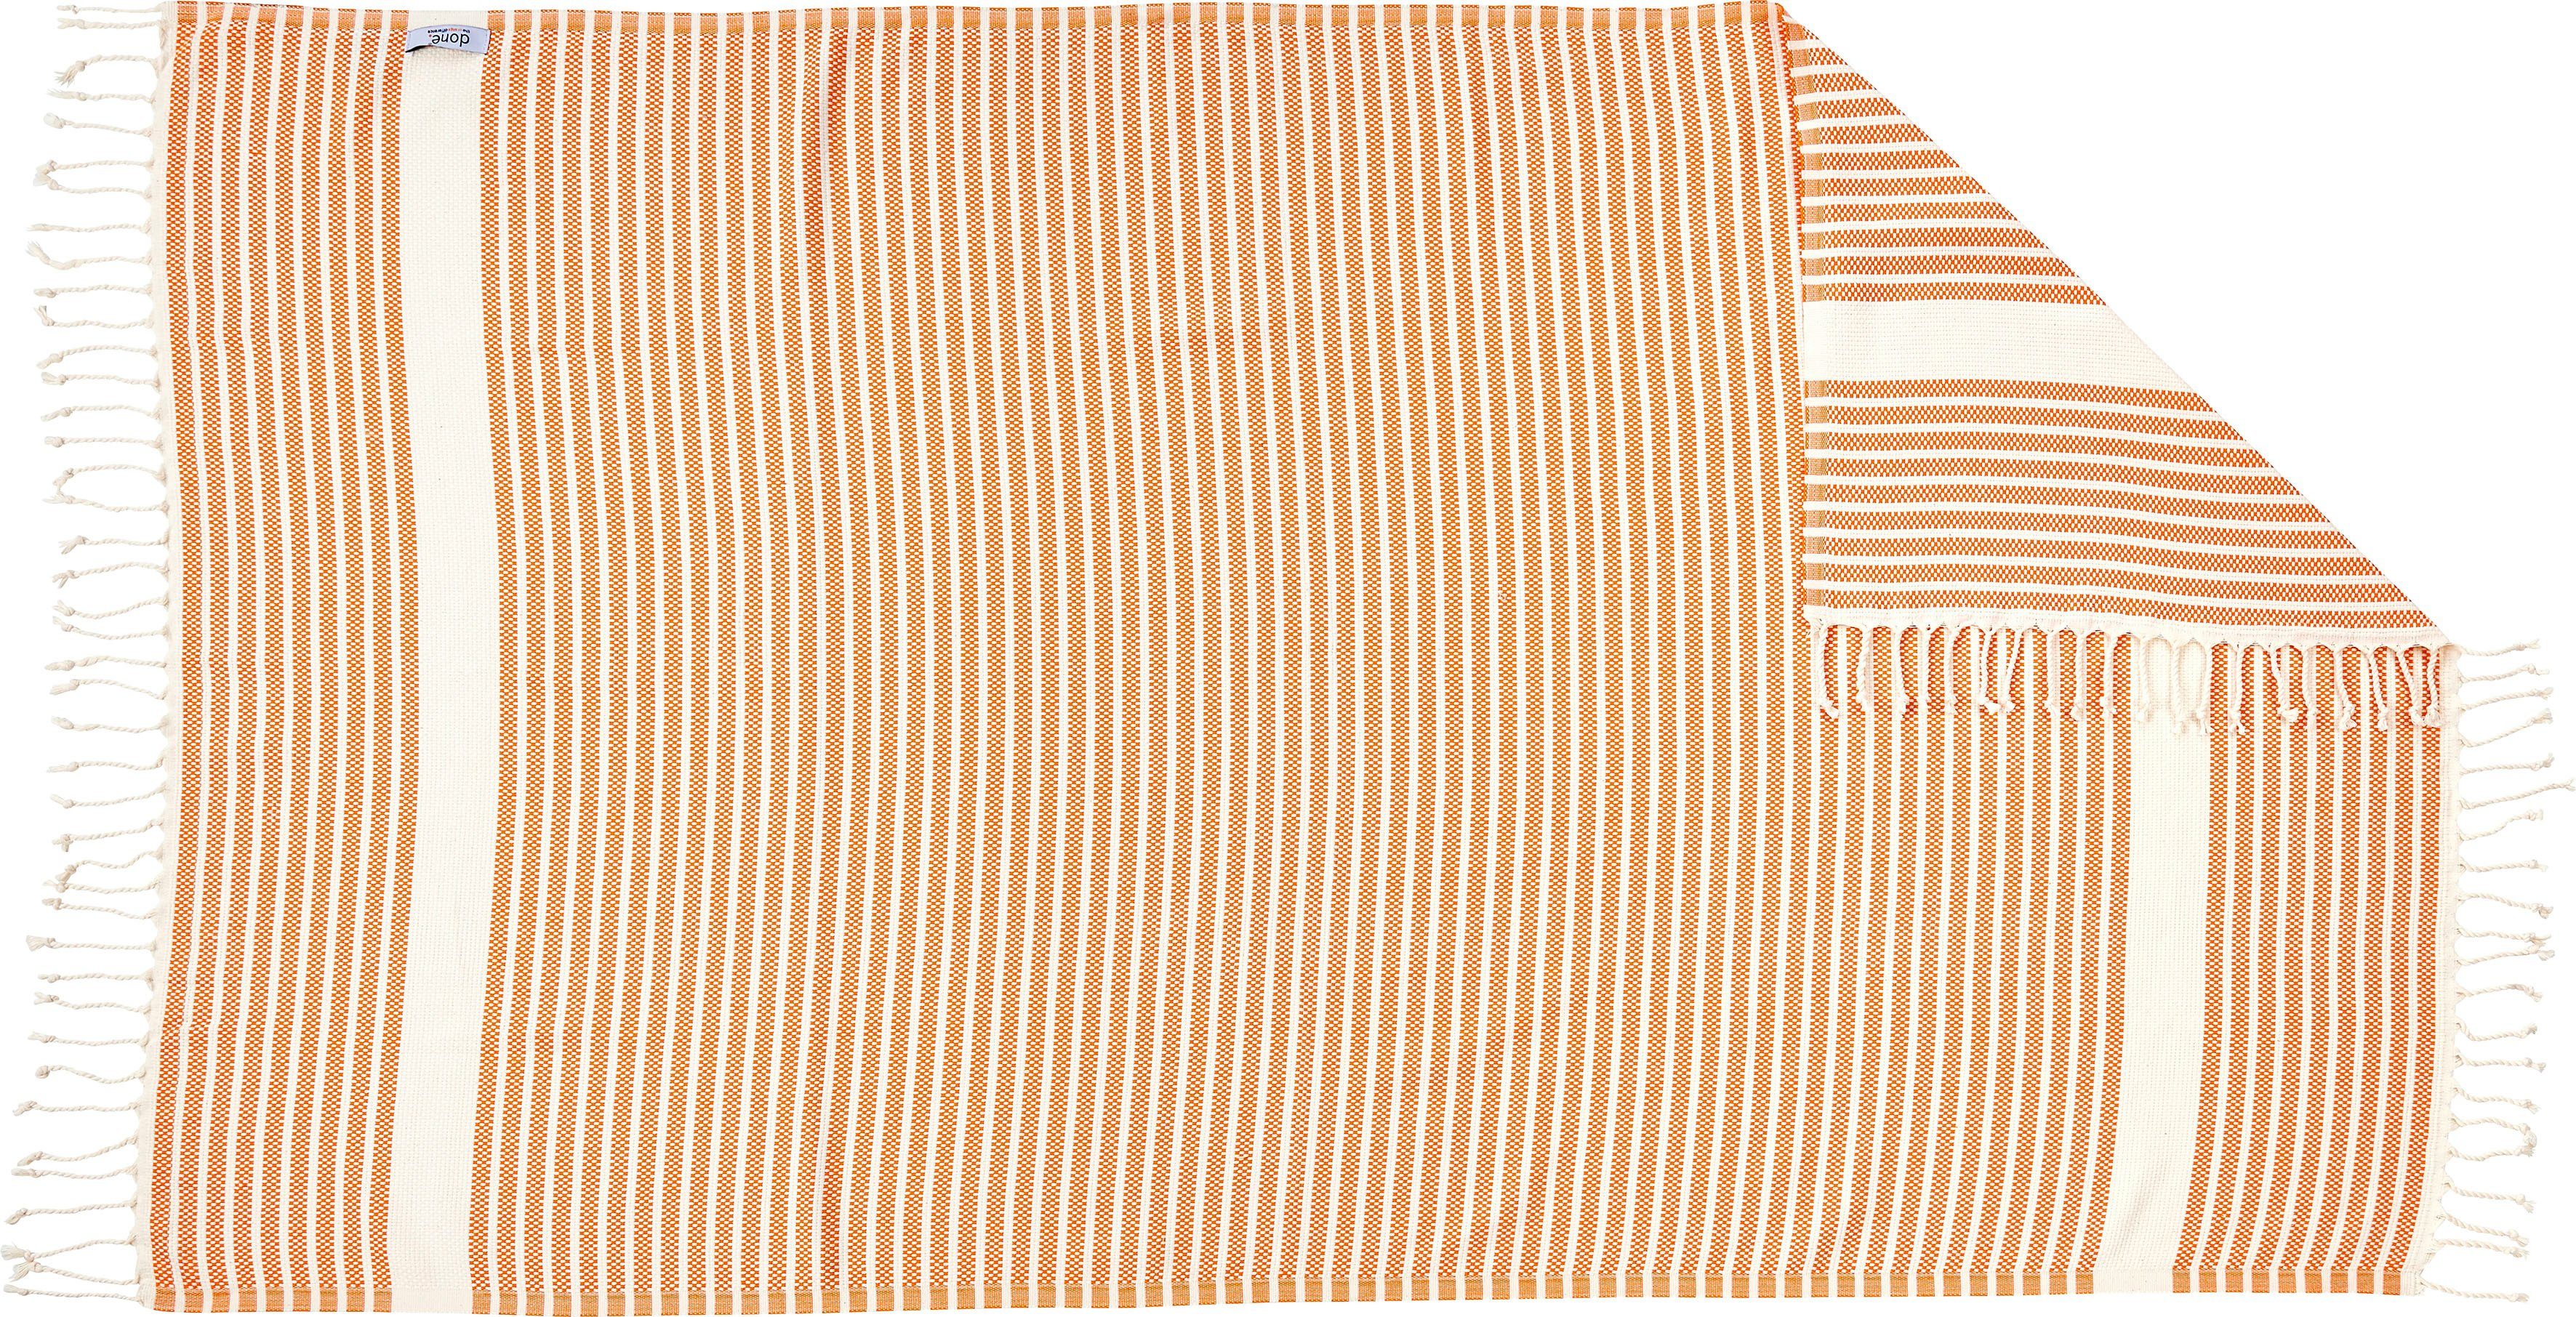 Leichtes Plaid geknoteten orange/beige mit Fransen Stripes, done.®, Lounge Plaid